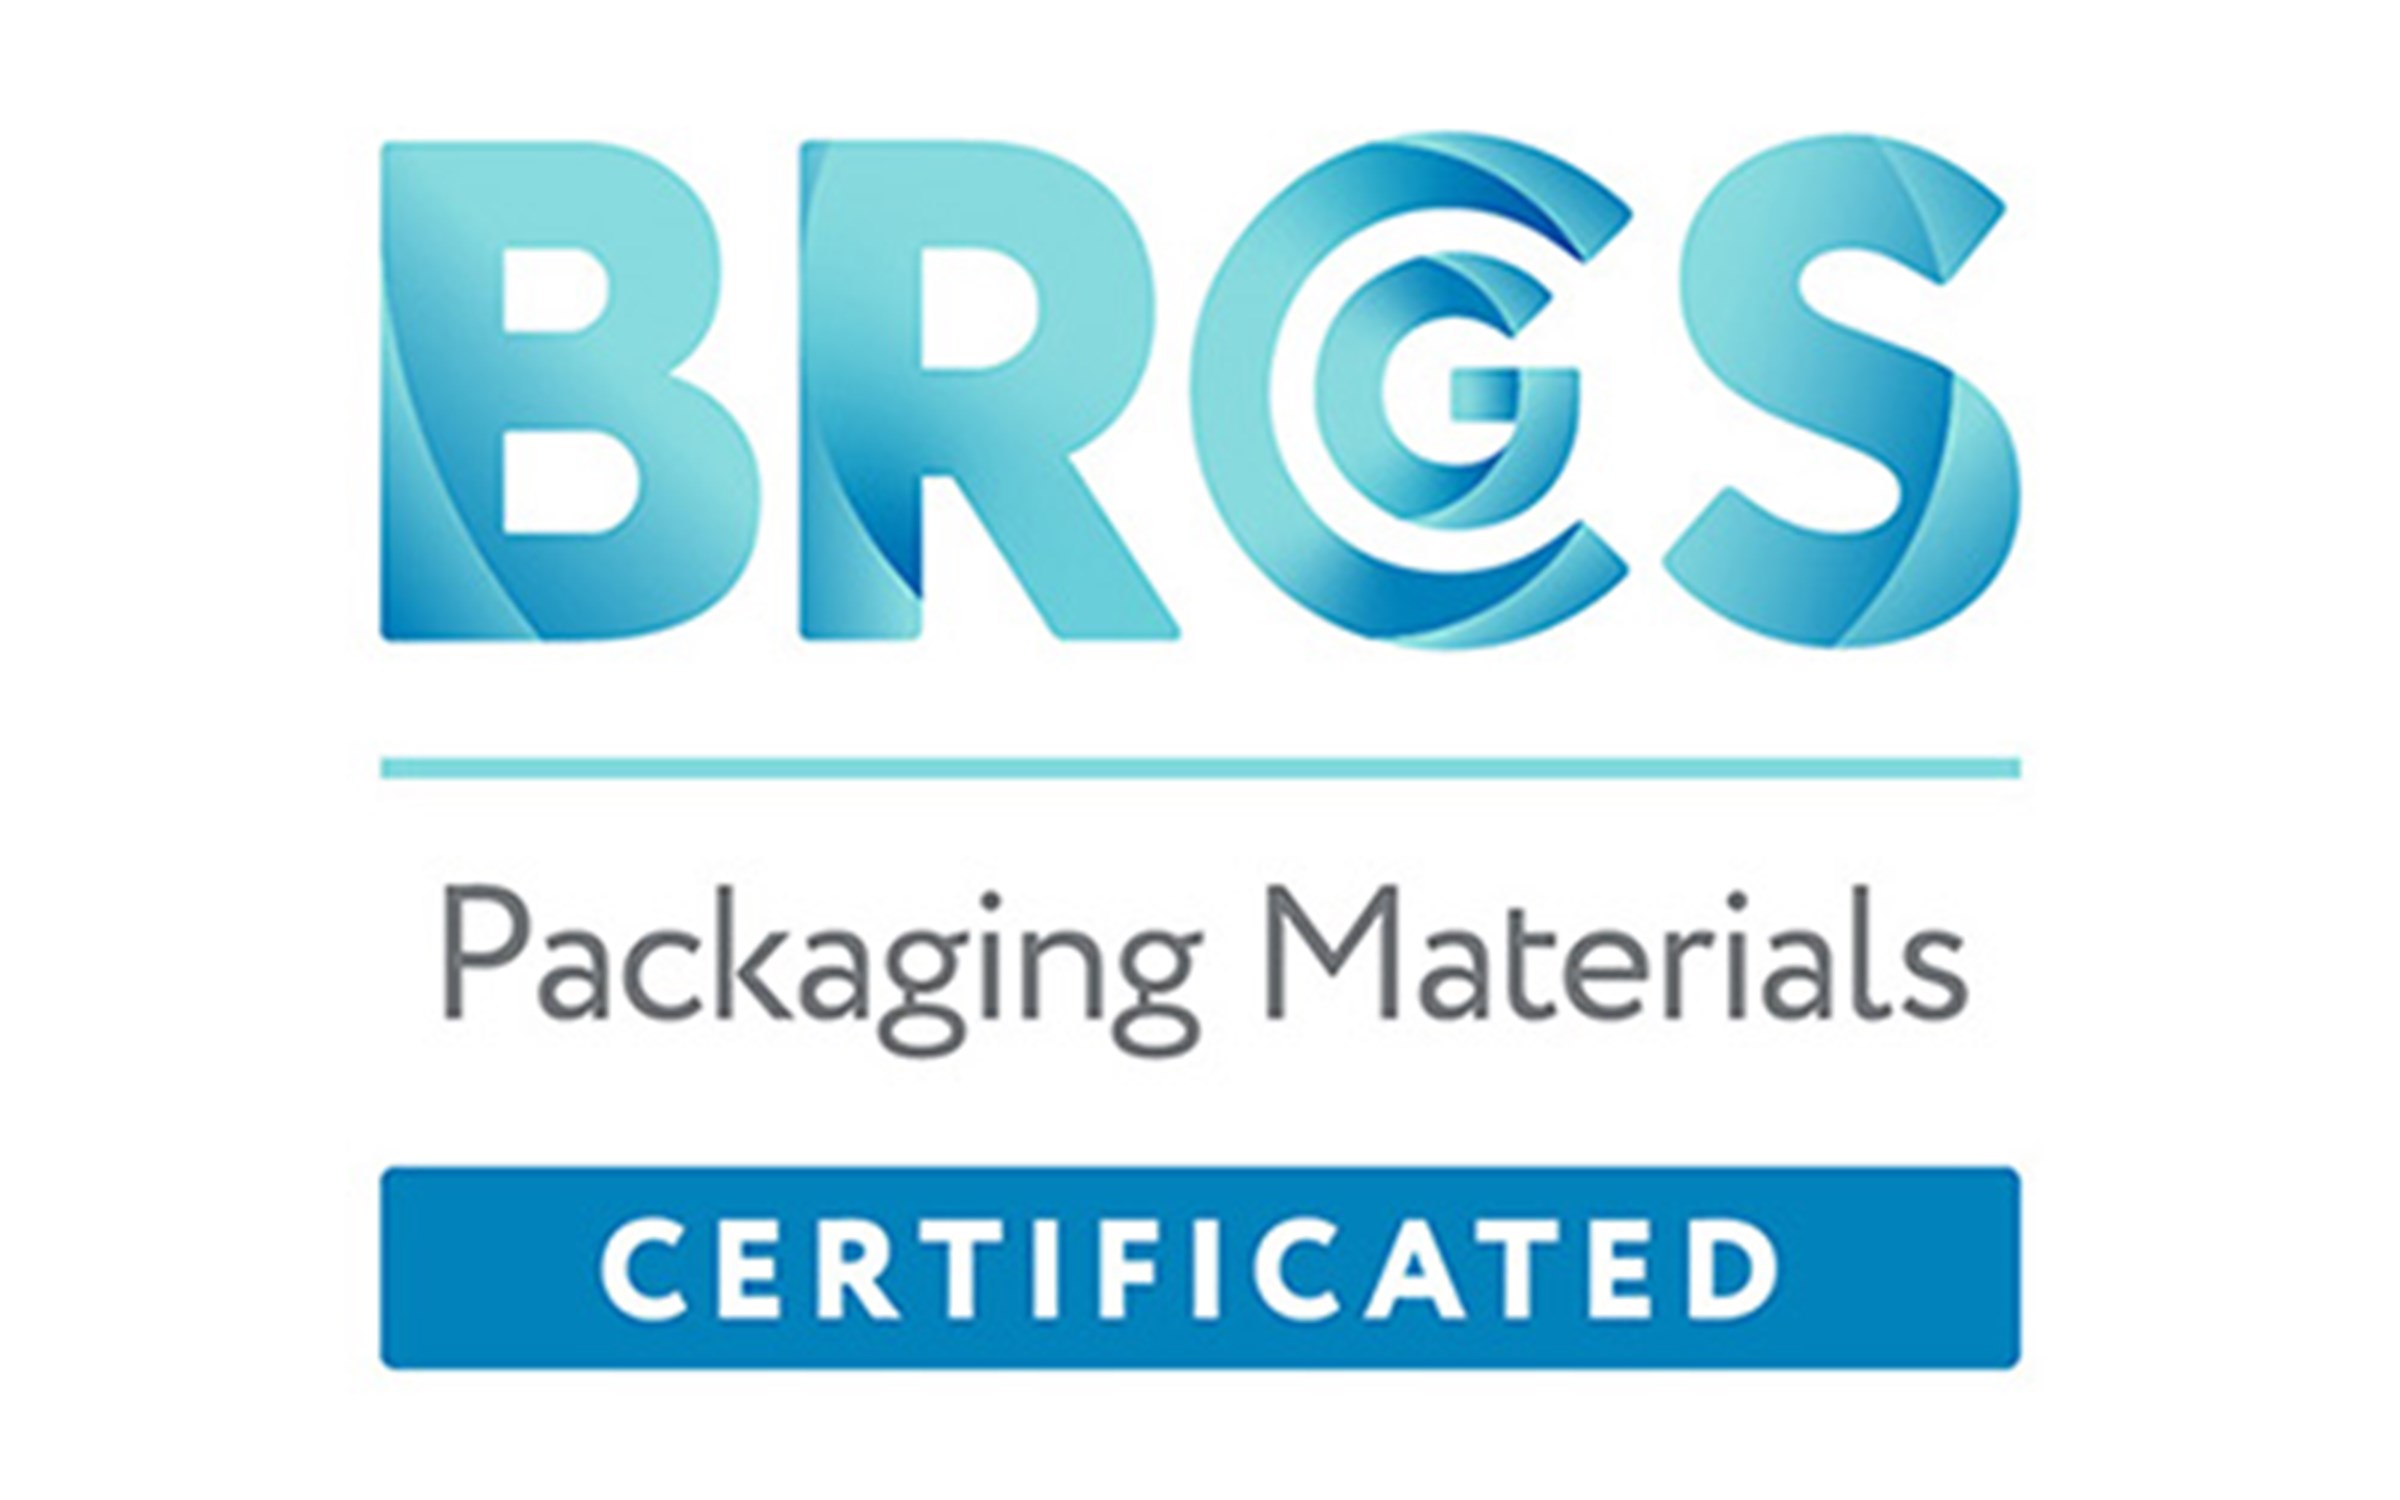 BRCGS Packaging